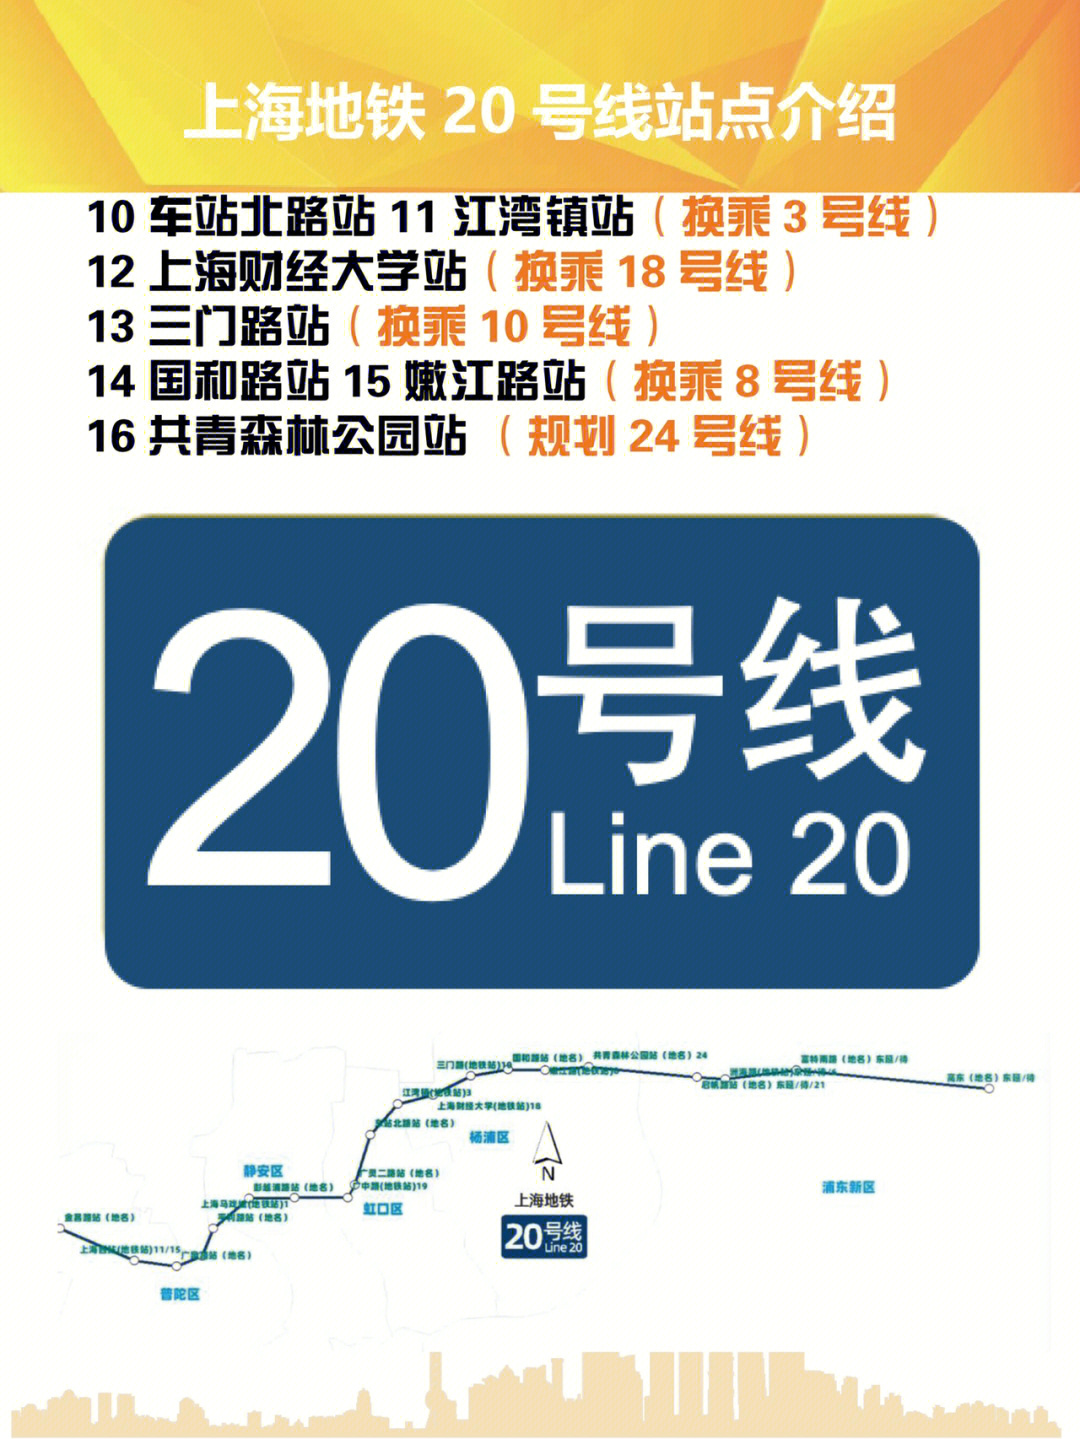 上海闵行20路线路图图片